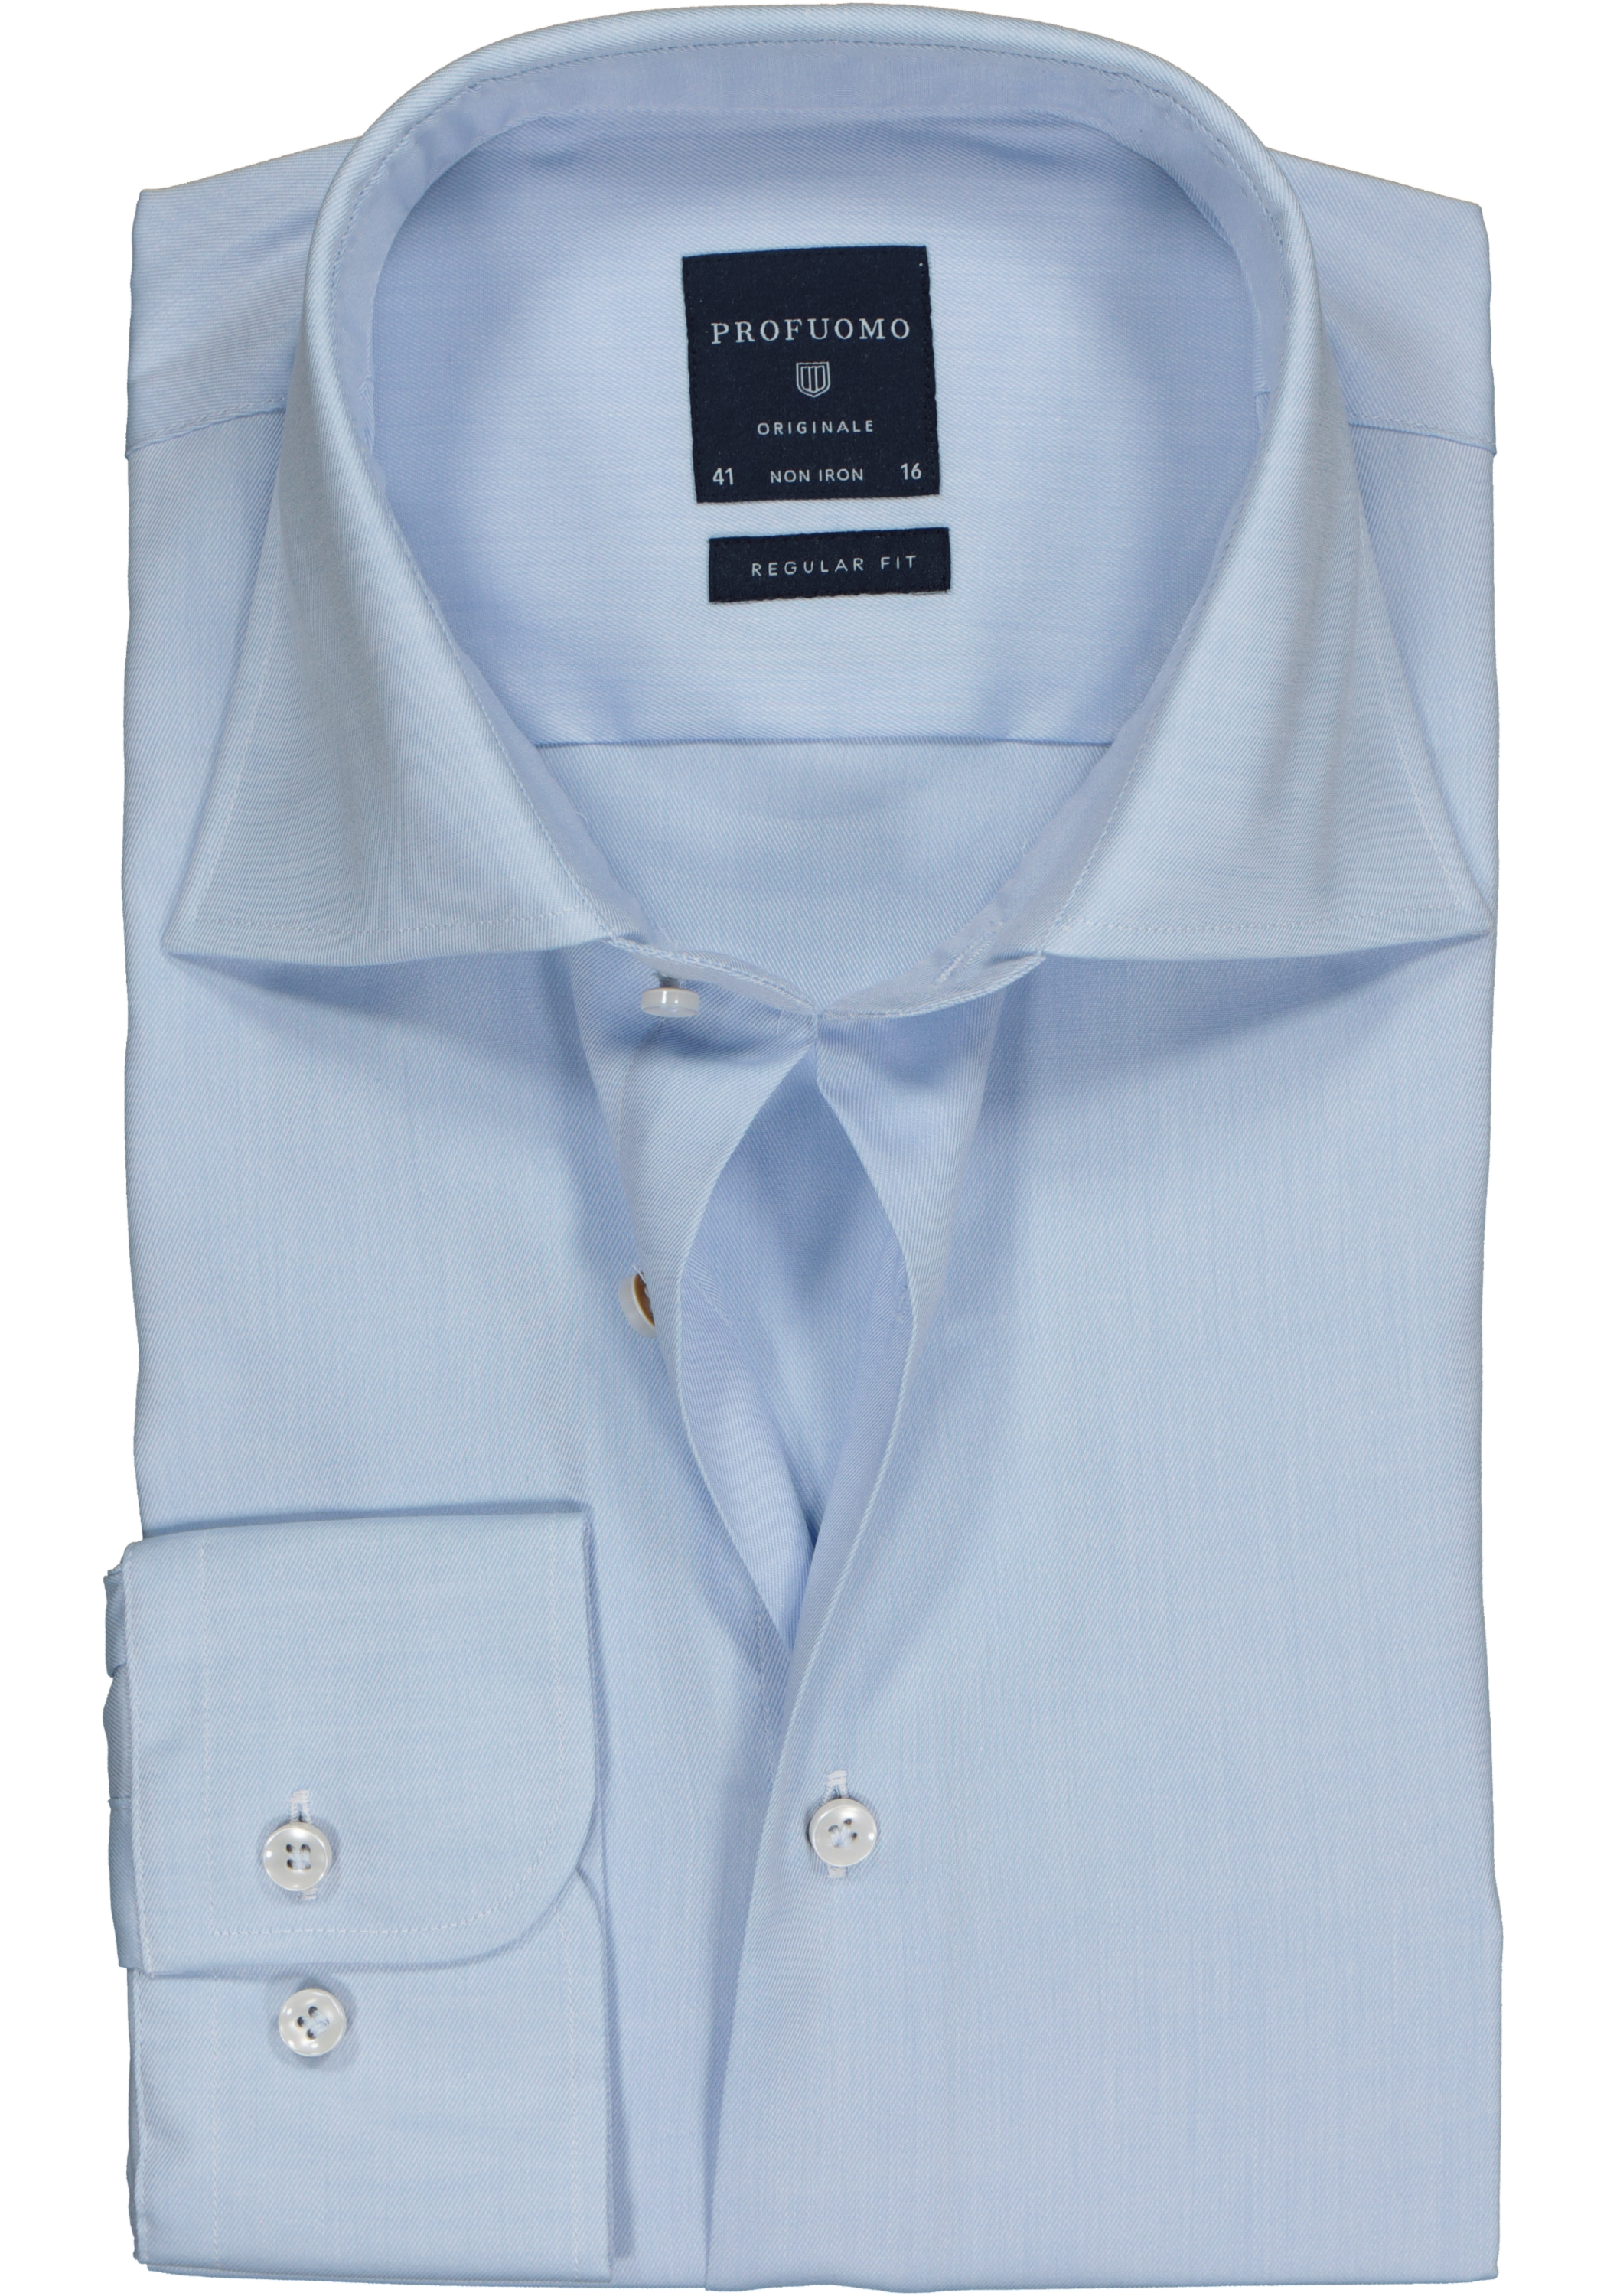 Profuomo Originale regular fit overhemd, fine twill, lichtblauw